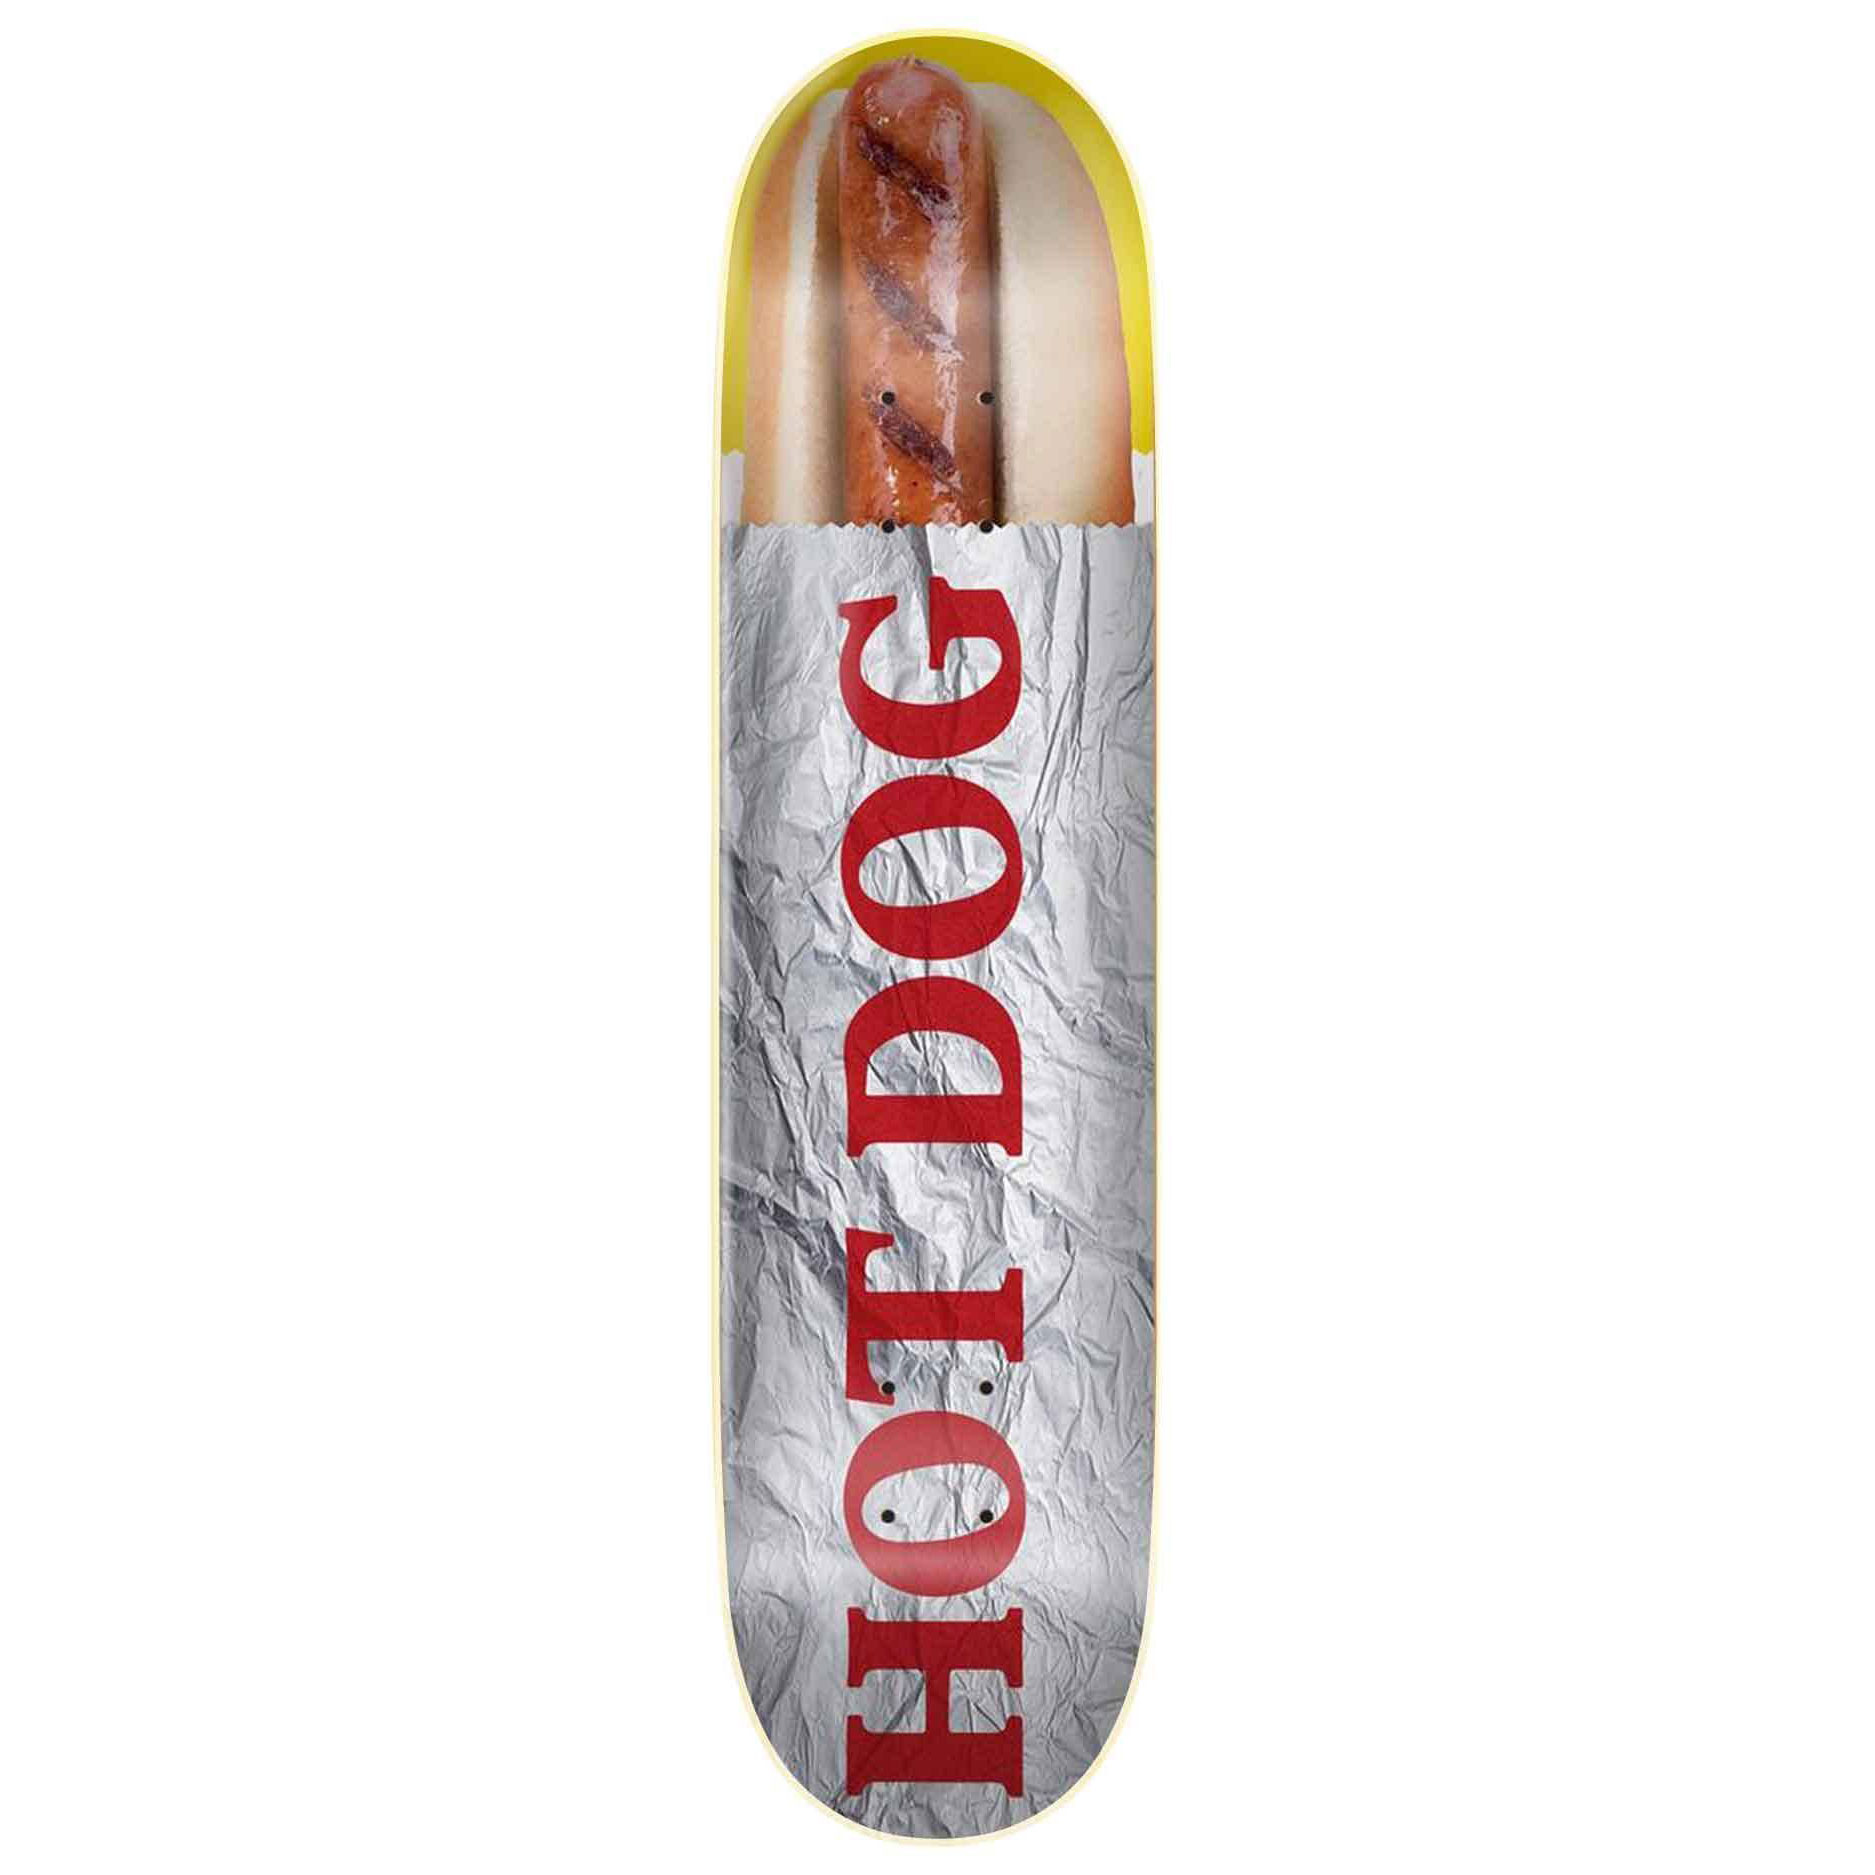 Skate Mental Deck Dan Plunkett Hot Dog 8.25